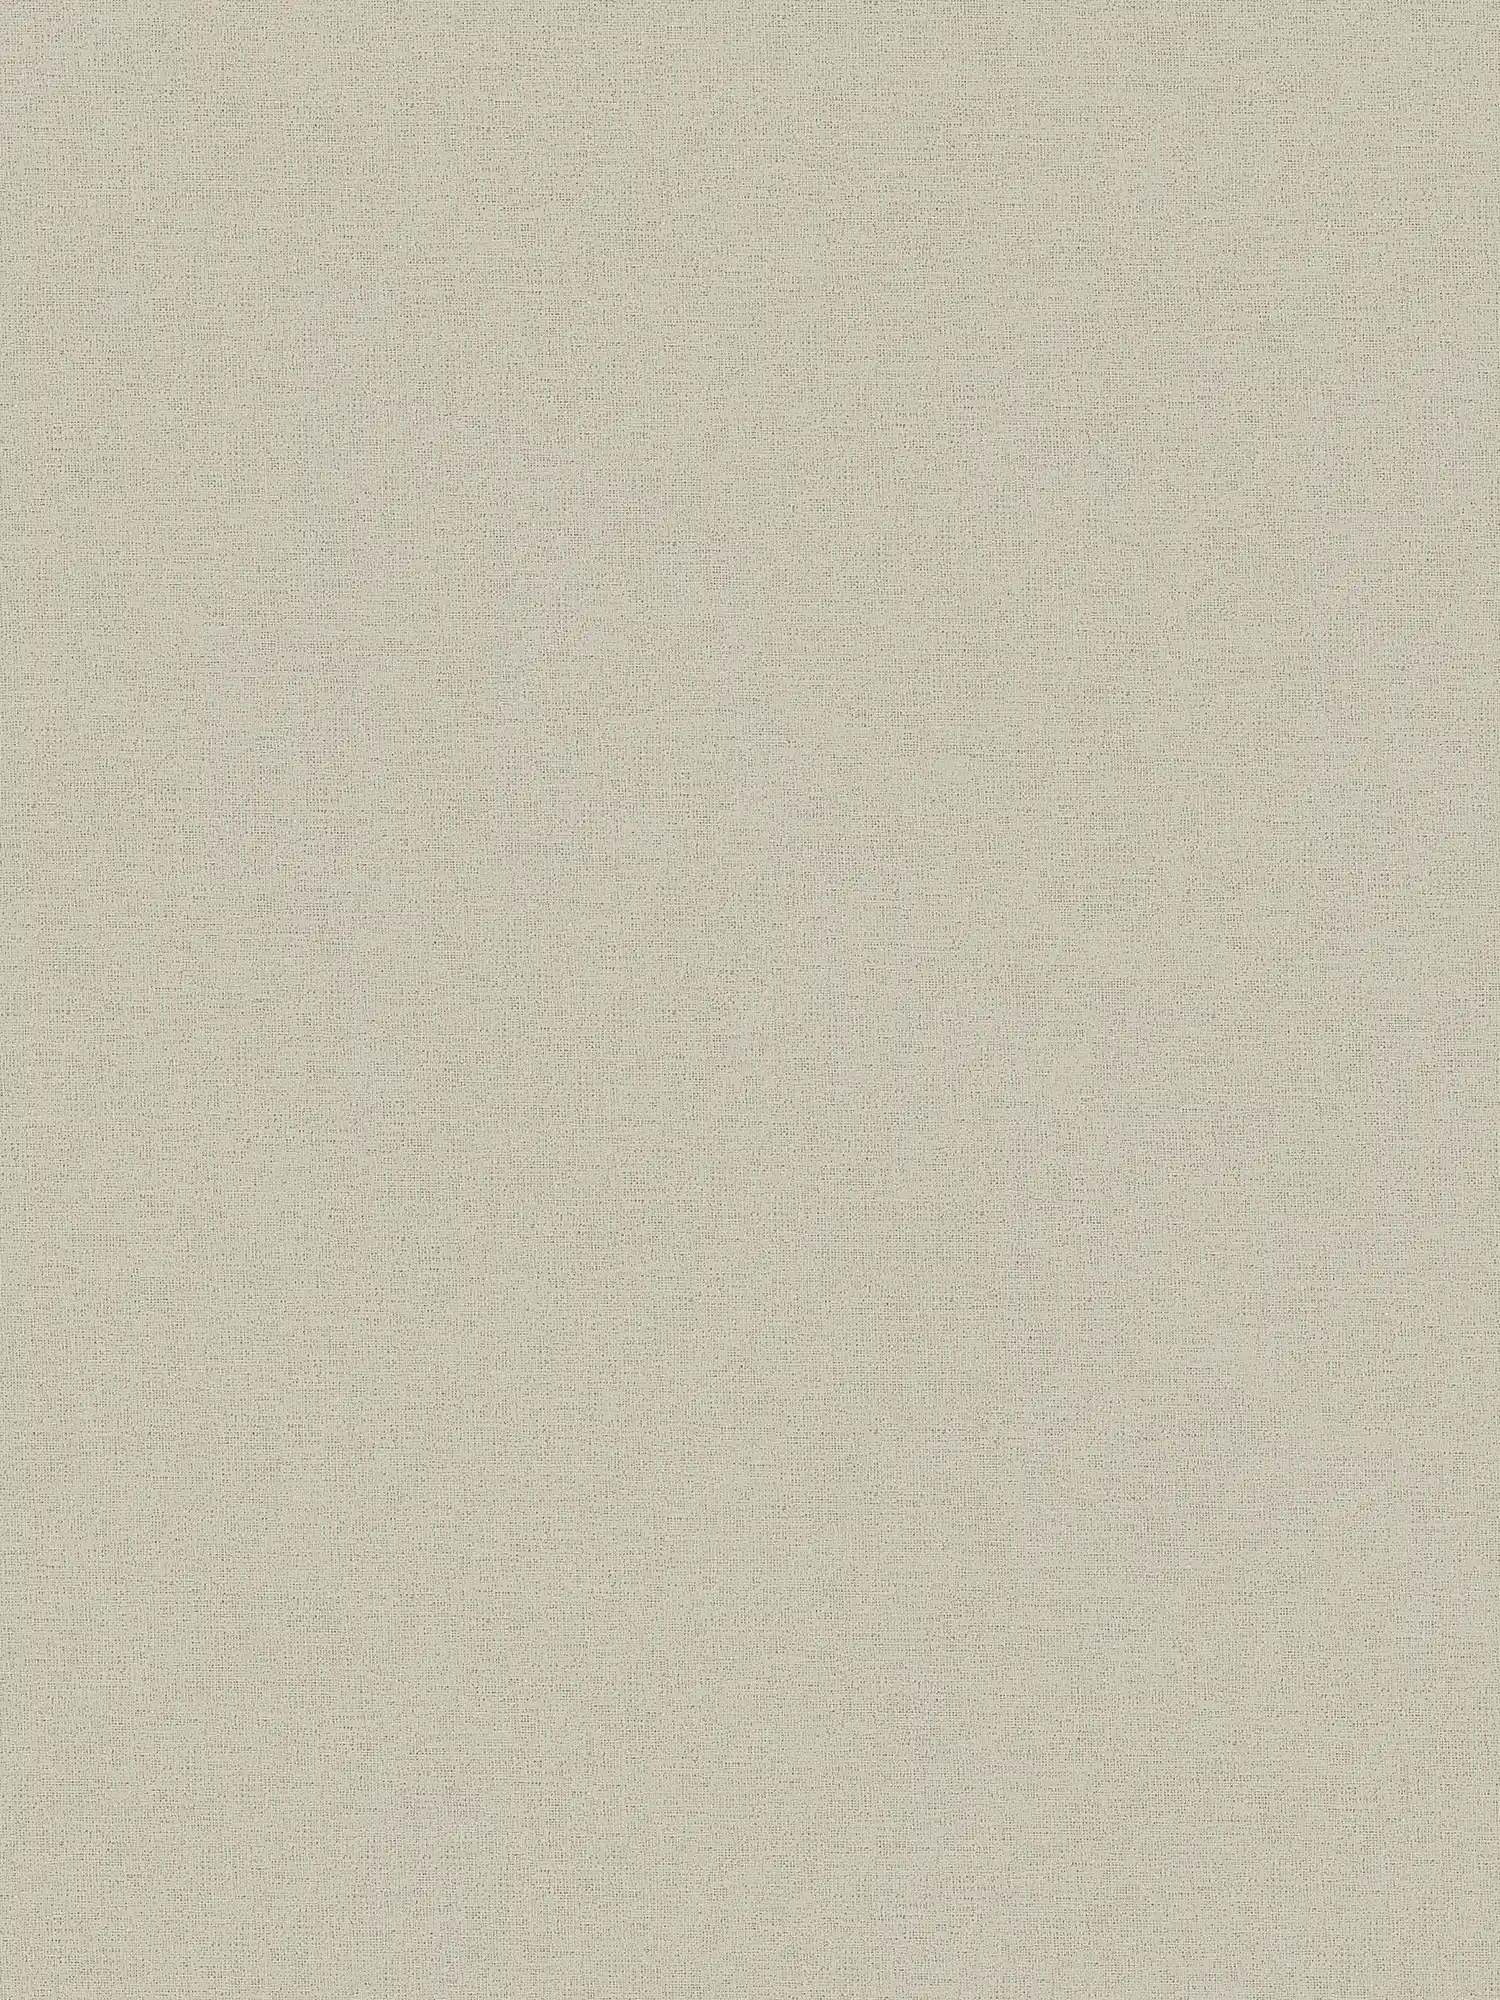 Papier peint aspect lin Beige avec structure textile chinée
